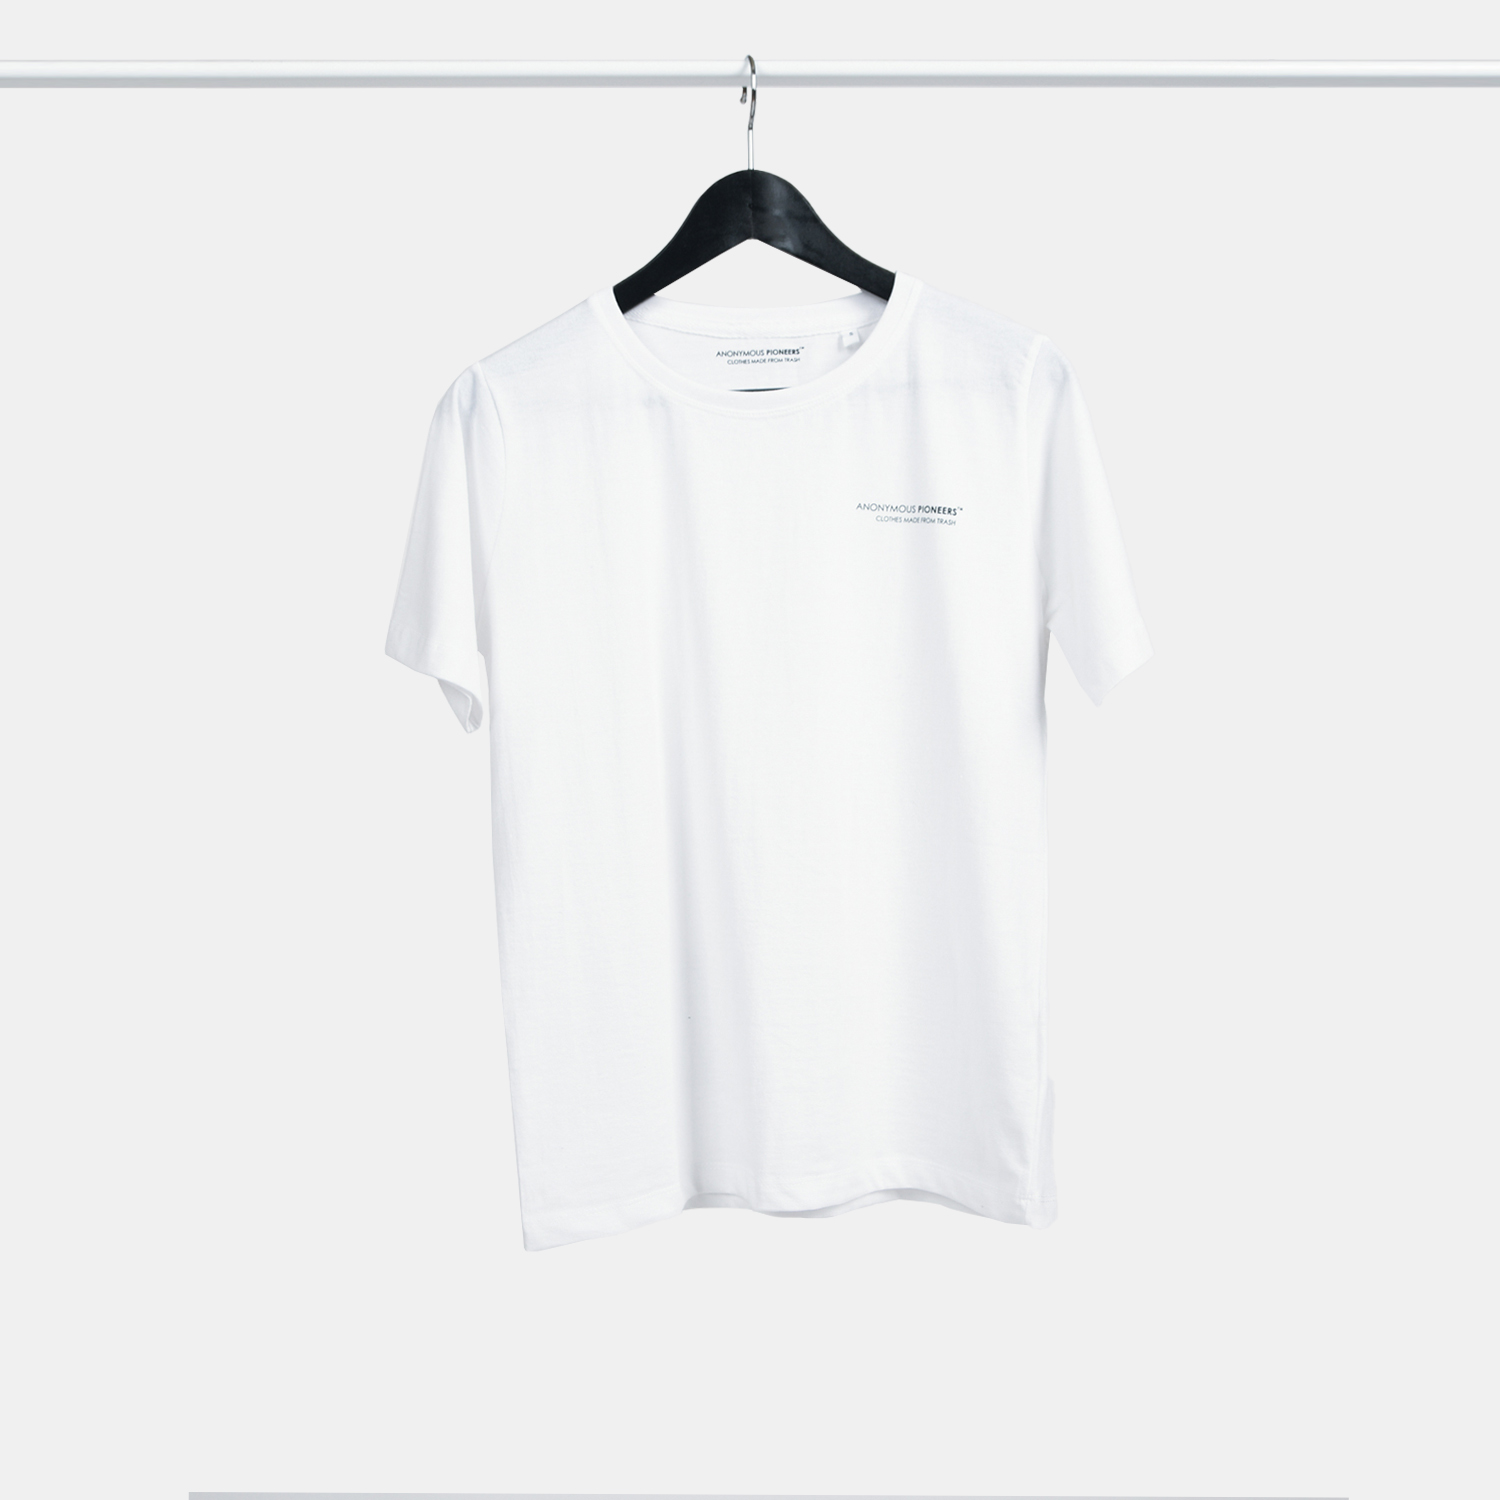 Genanvendt T-shirt i hvid til kvinder, fra A-PIONEER